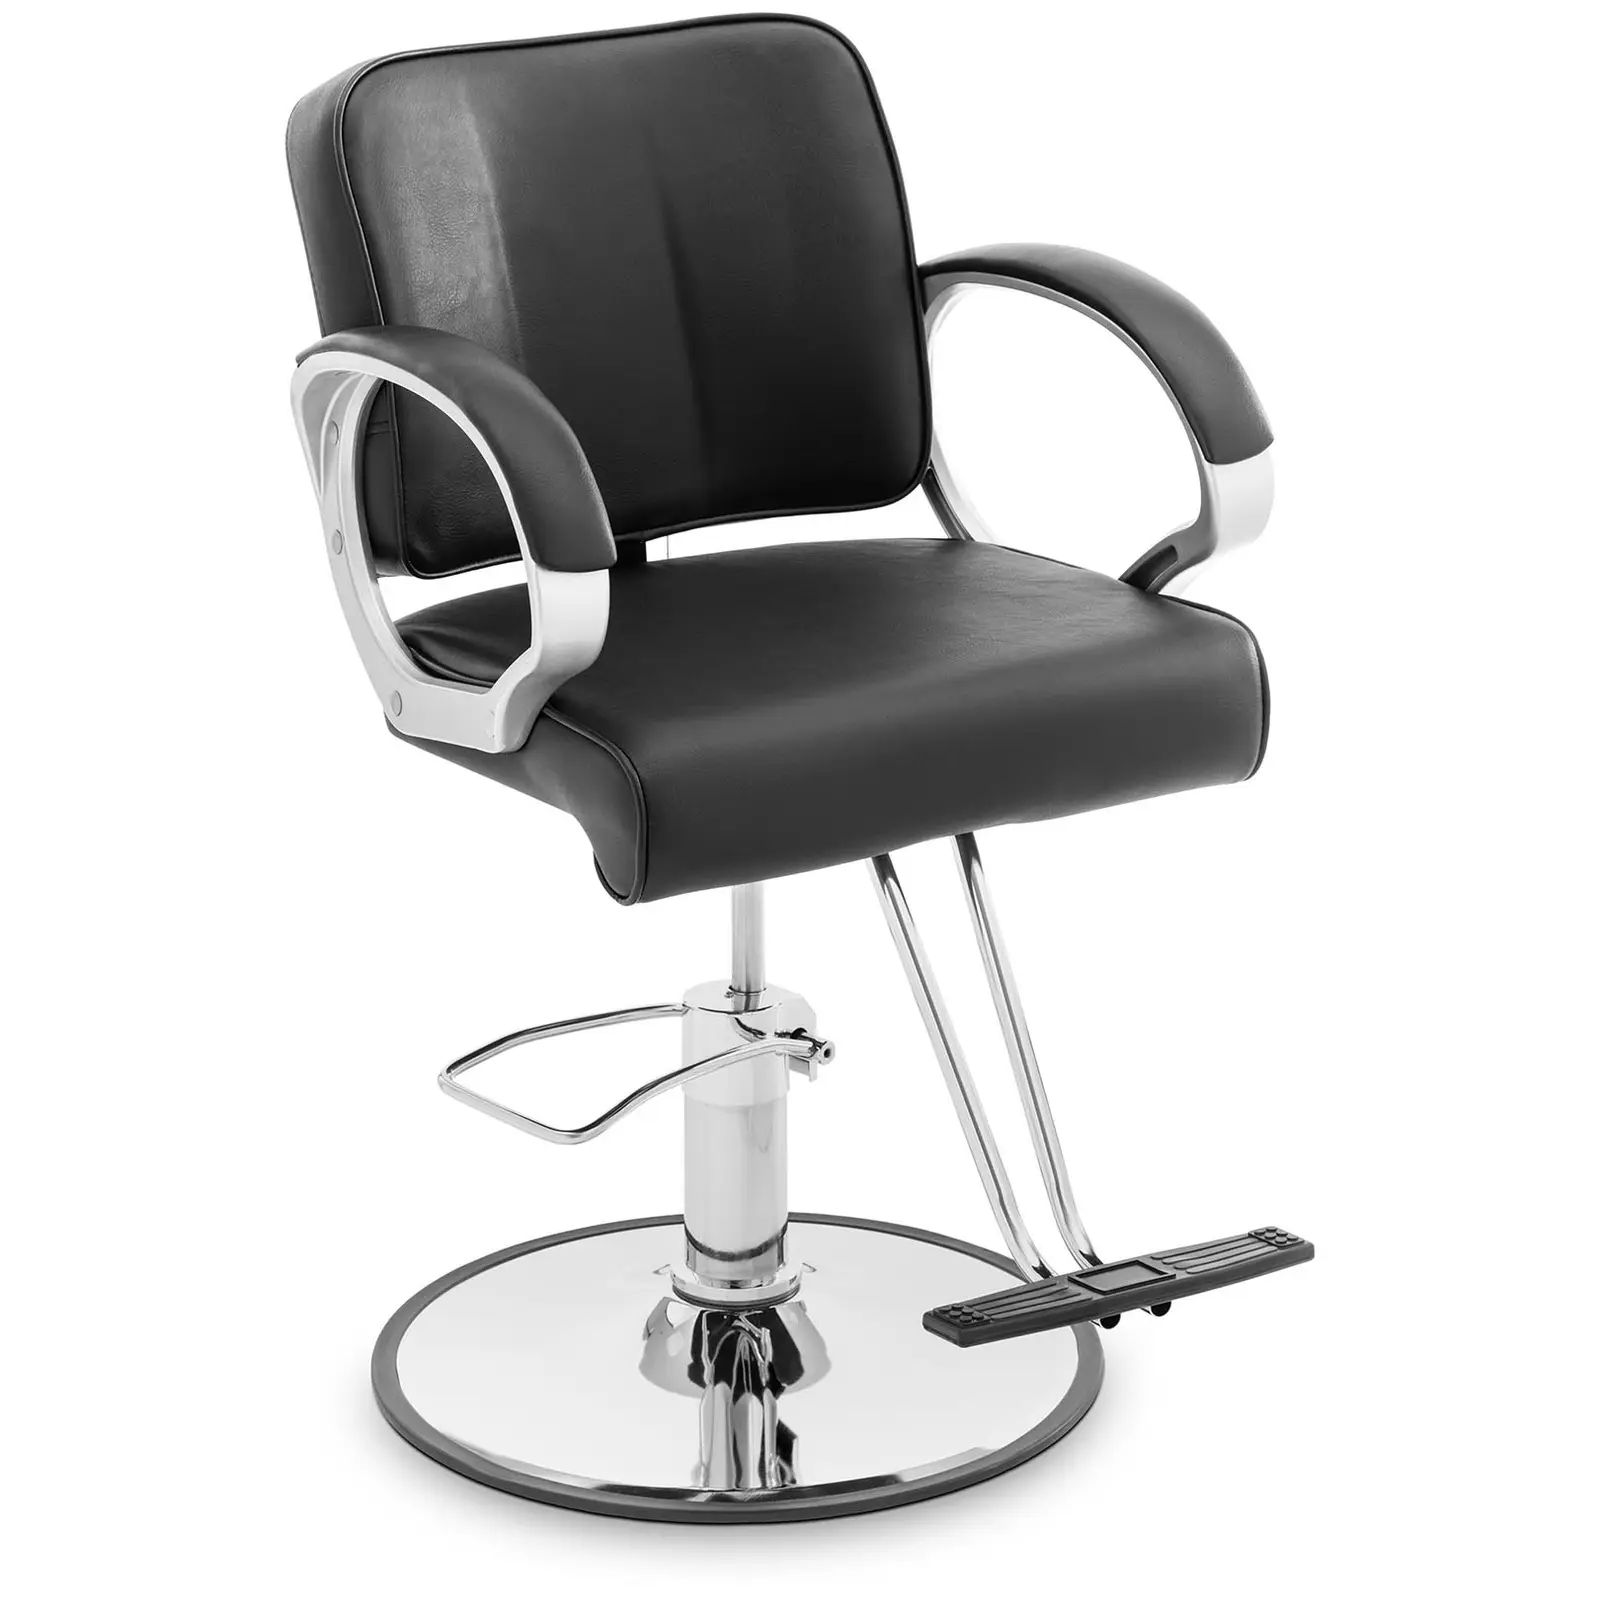 Salon chair - T-footrest - 50 - 60 cm - 180 kg - black